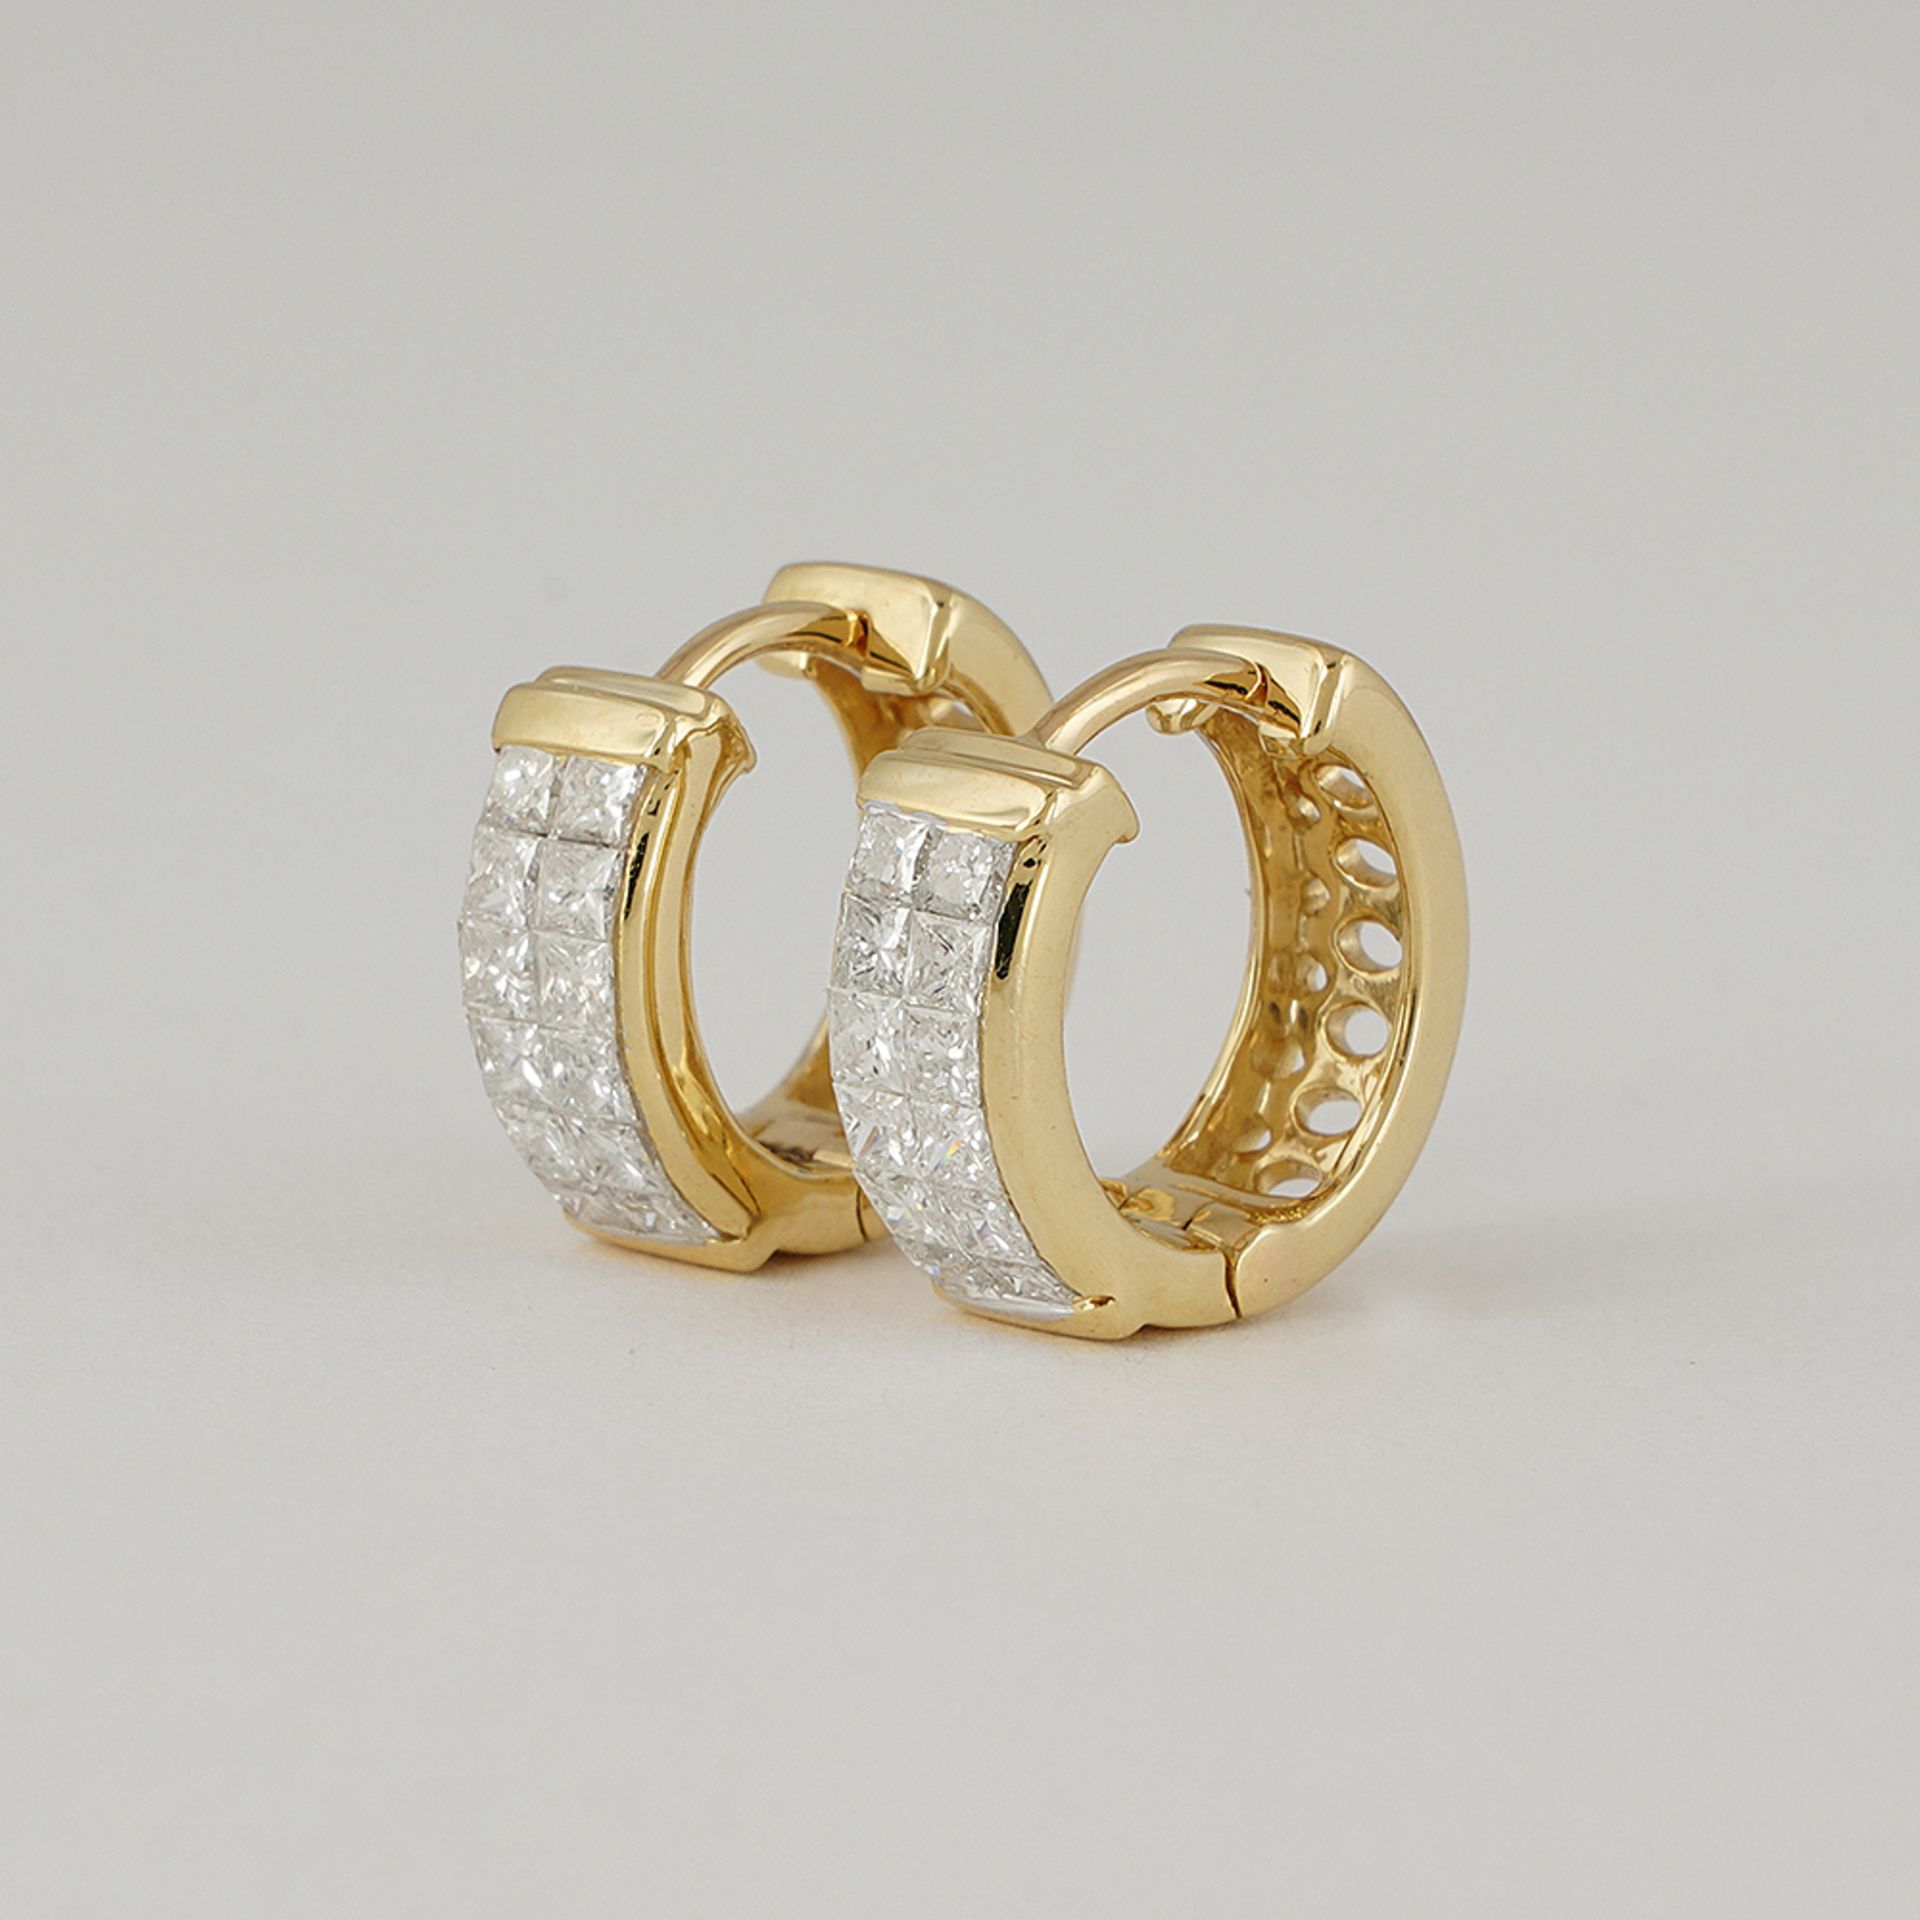 14 K / 585 Yellow Gold Diamond Hoop Earrings - Image 3 of 5